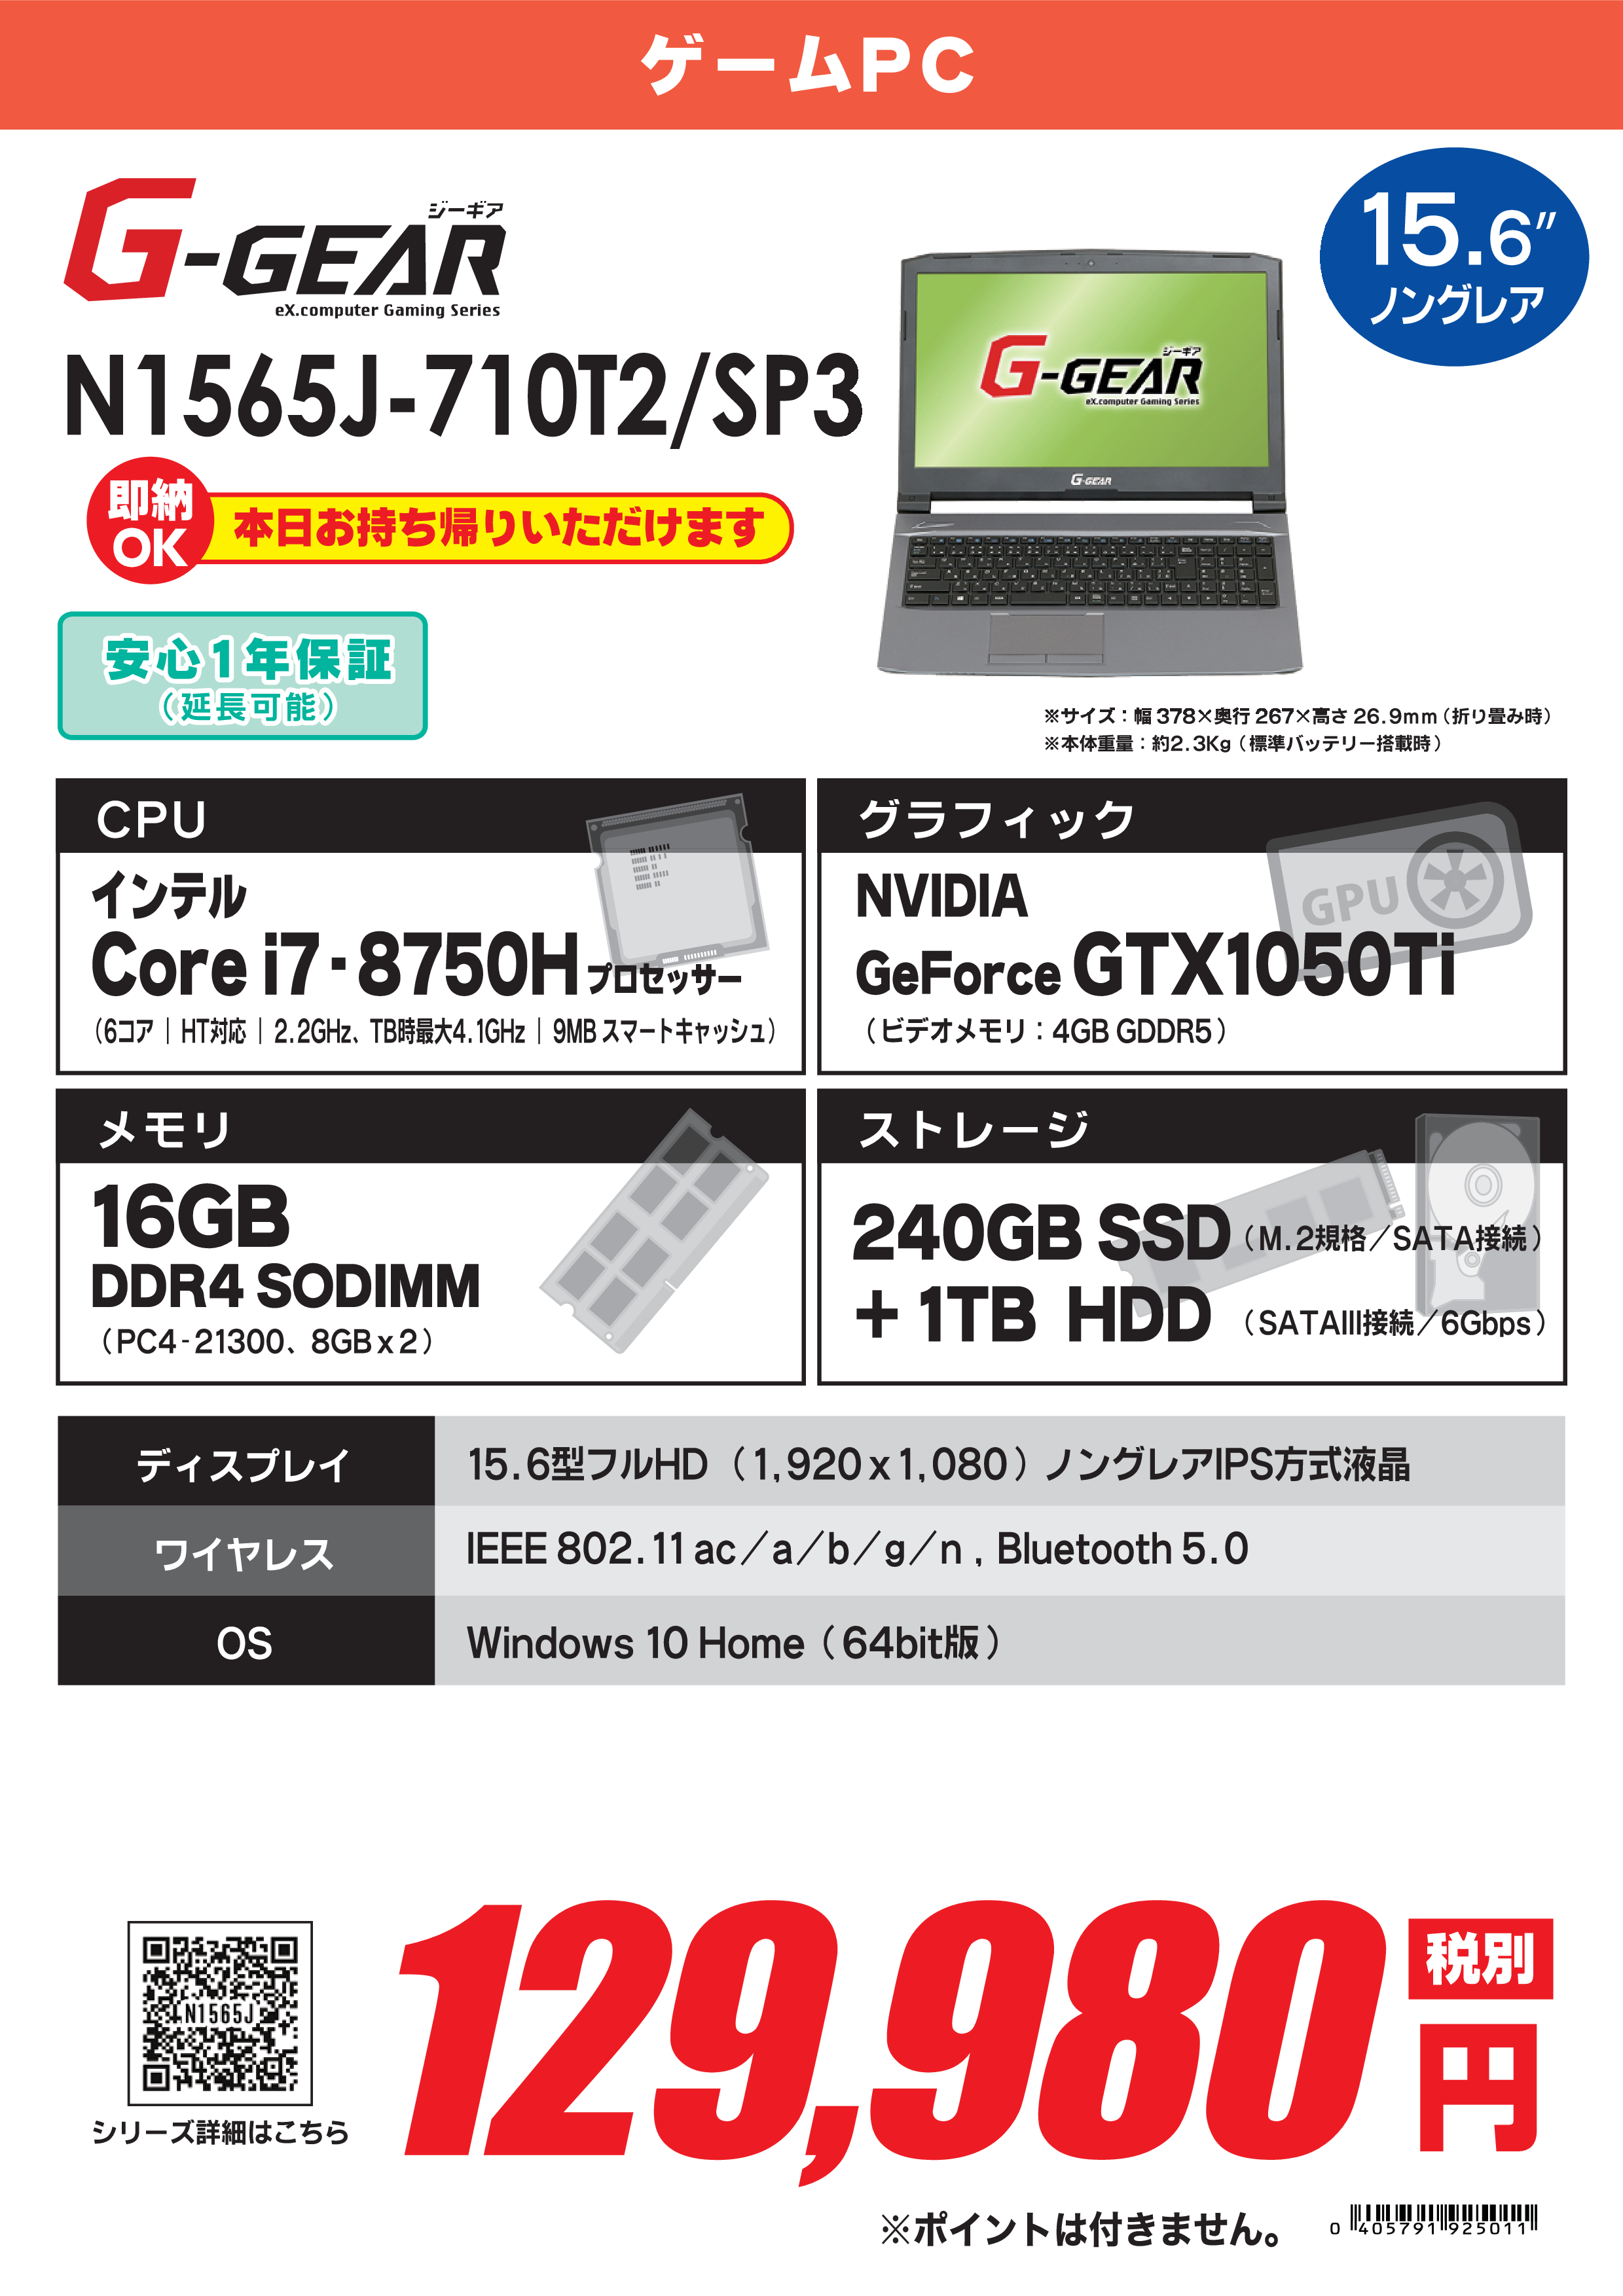 PC/タブレット ノートPC B品セール ツクモ eX.computer N1542J GPUSSDHDD搭載カメラ付 